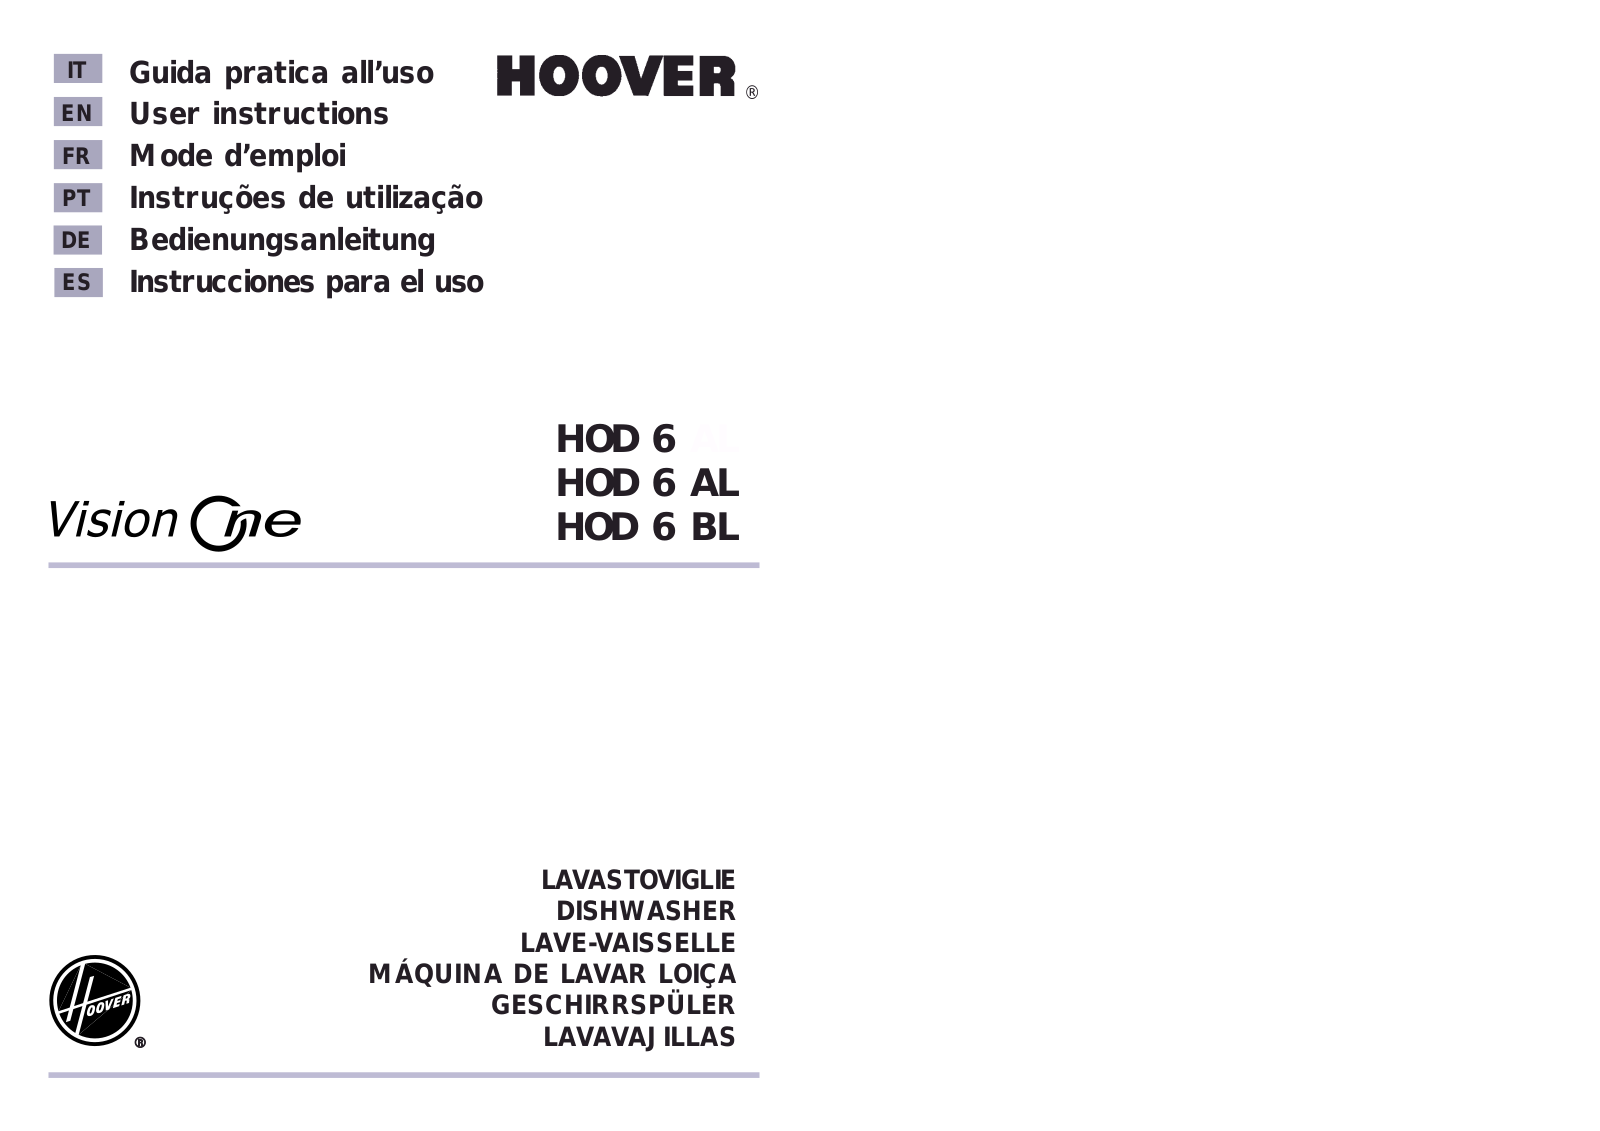 HOOVER HOD 6 Alu, HOD 6/1, HOD 6 BL/1, HOD 6 User Manual